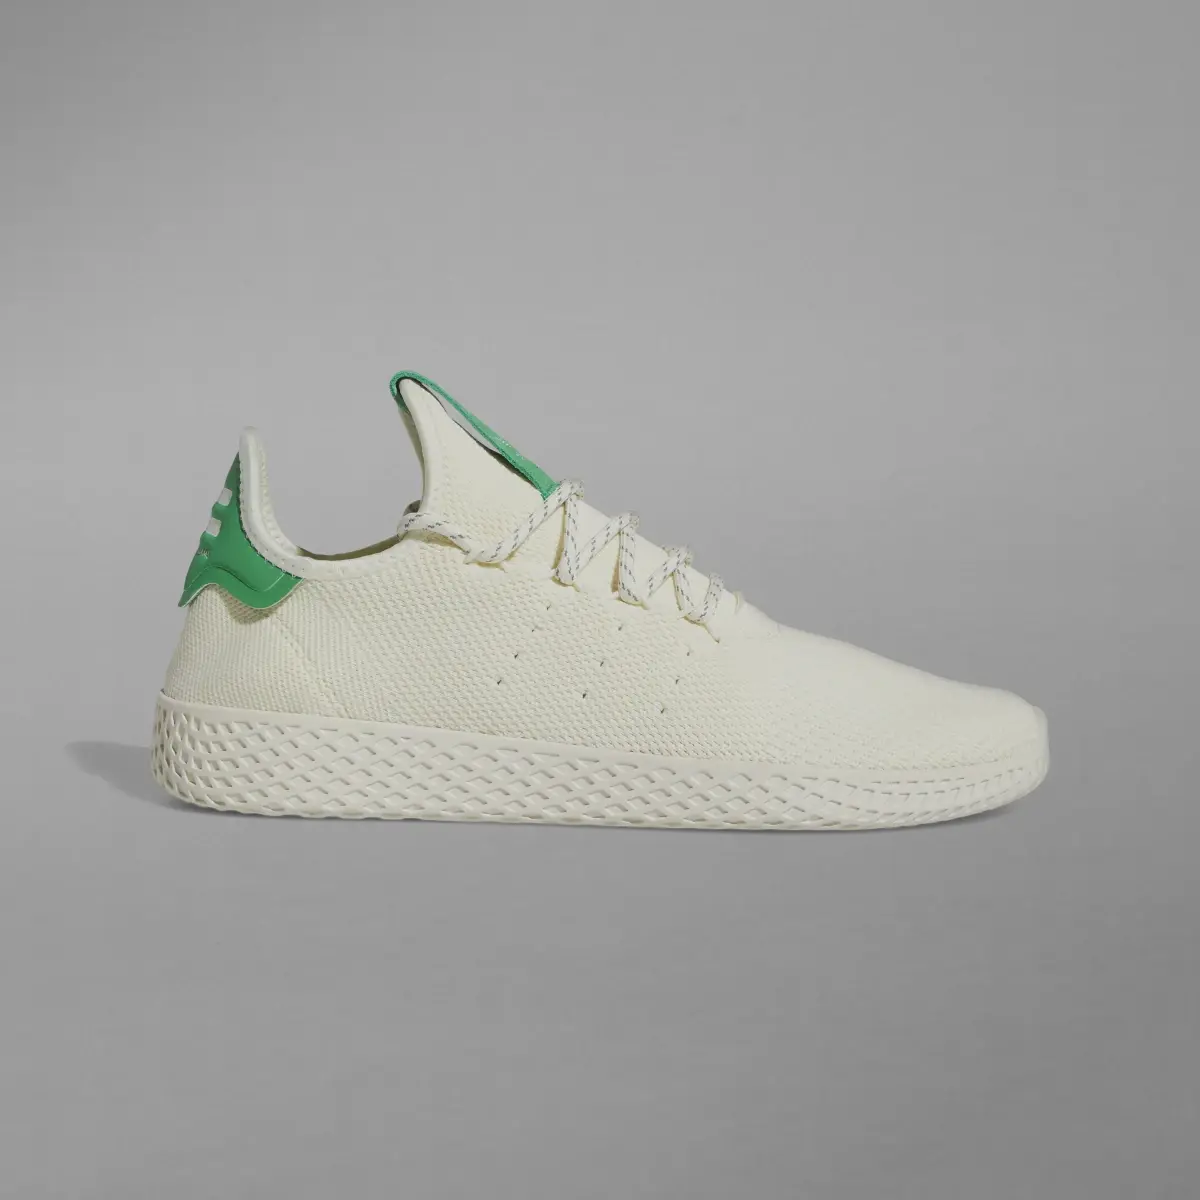 Adidas Tennis Hu Shoes. 2